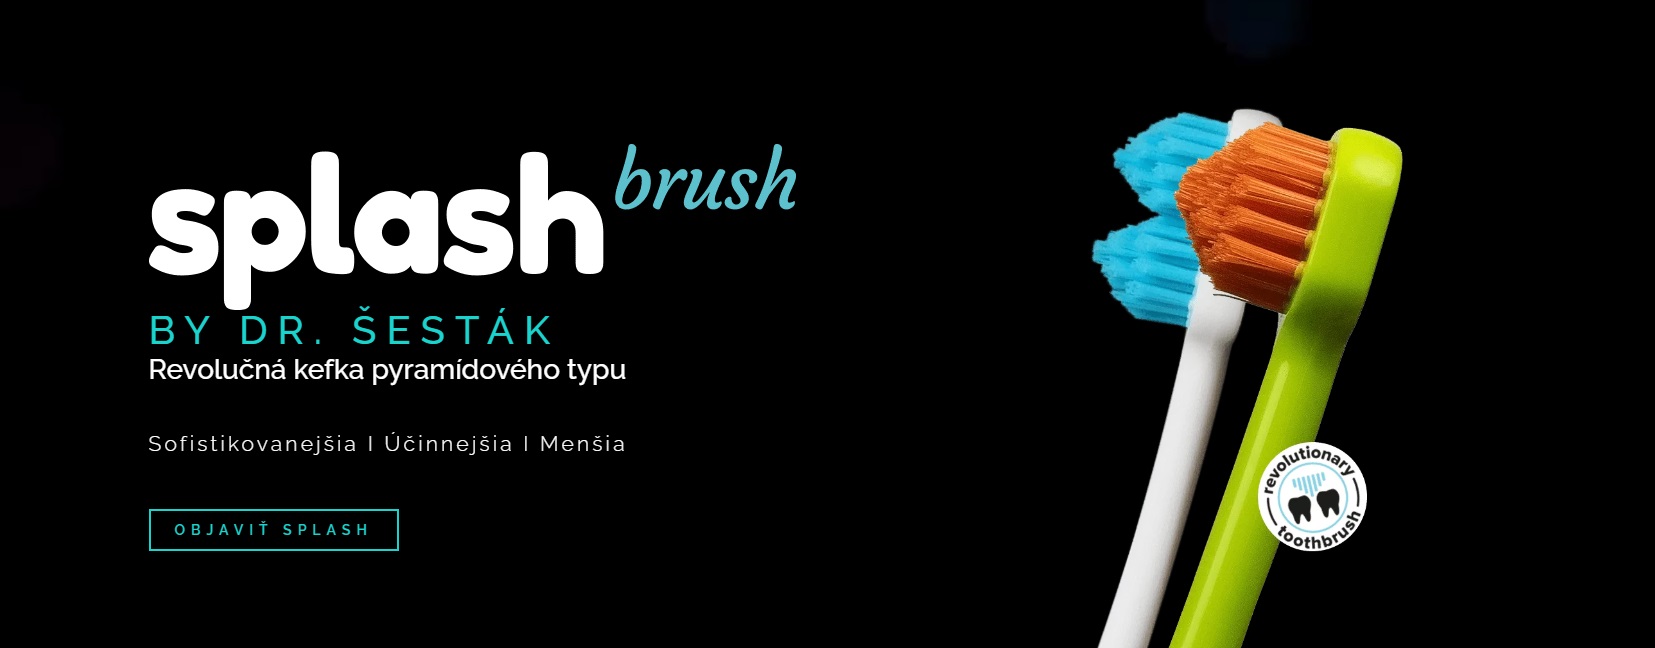 splash brush